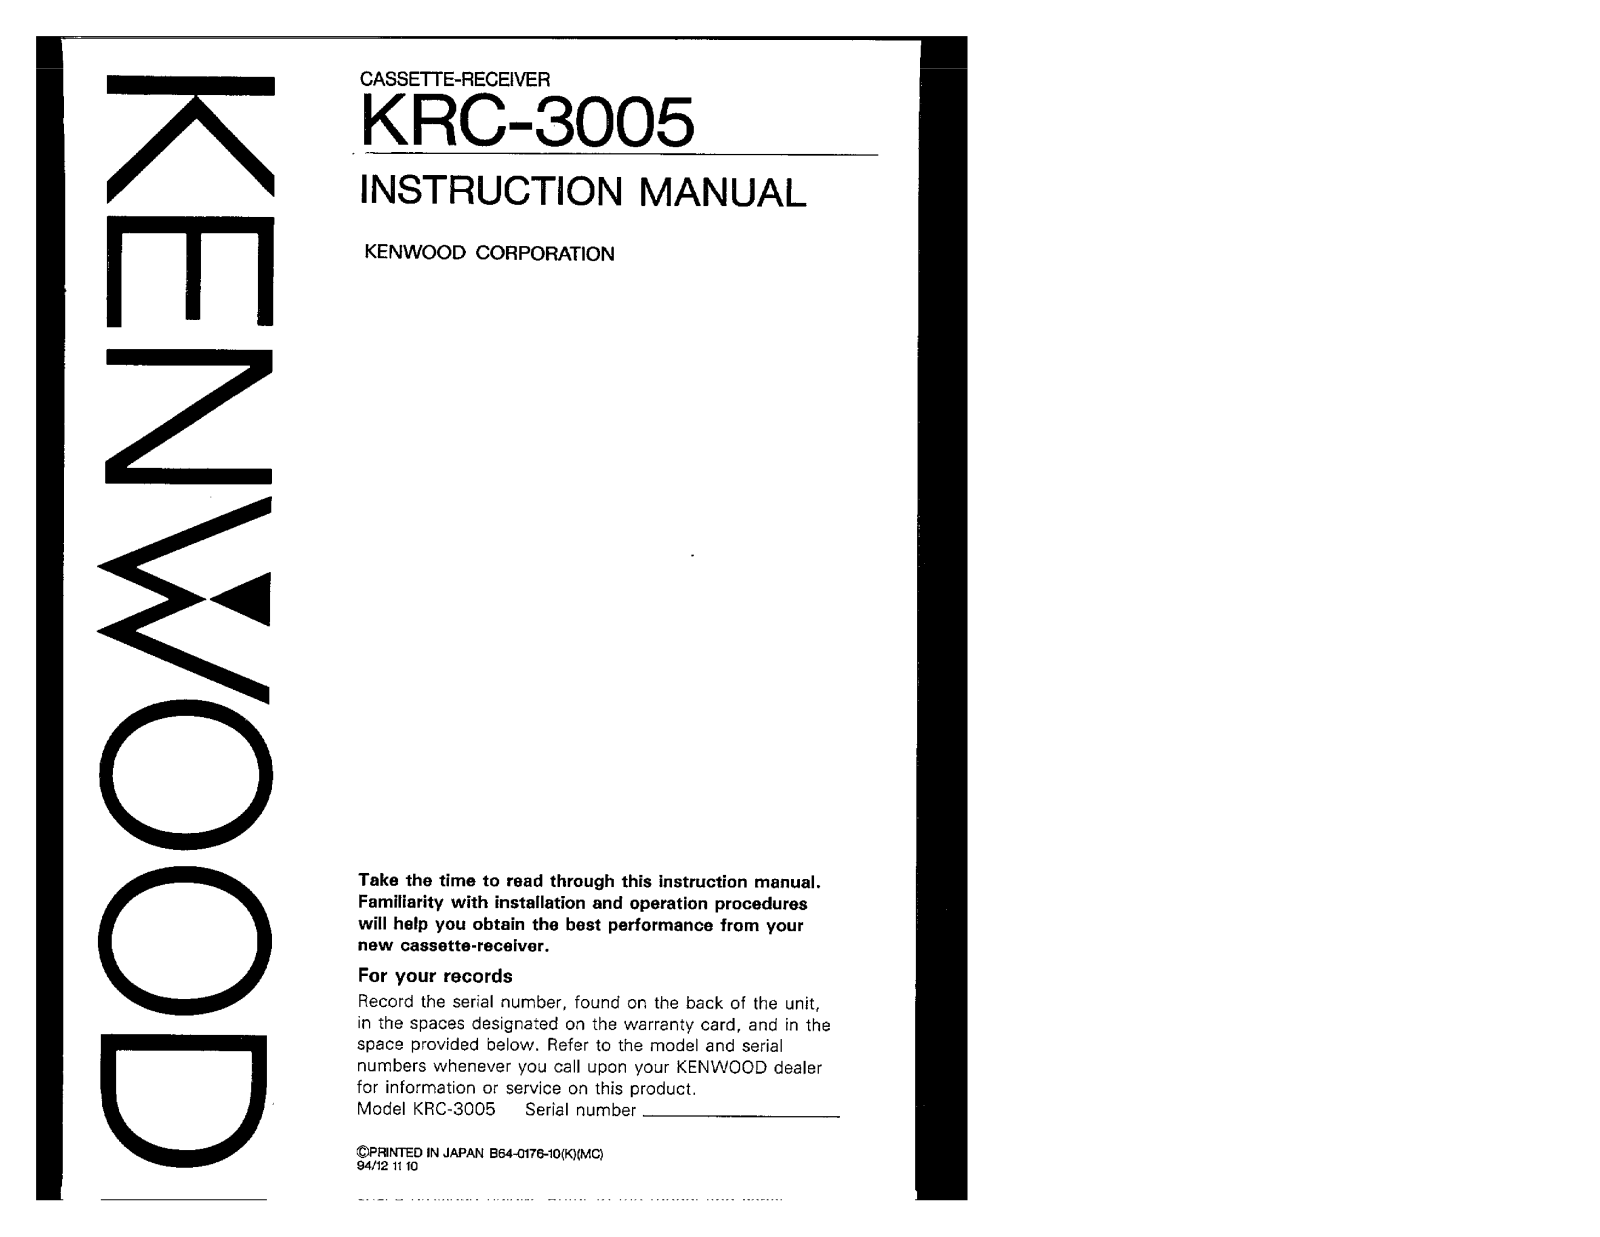 Kenwood KRC-3005 Owner's Manual